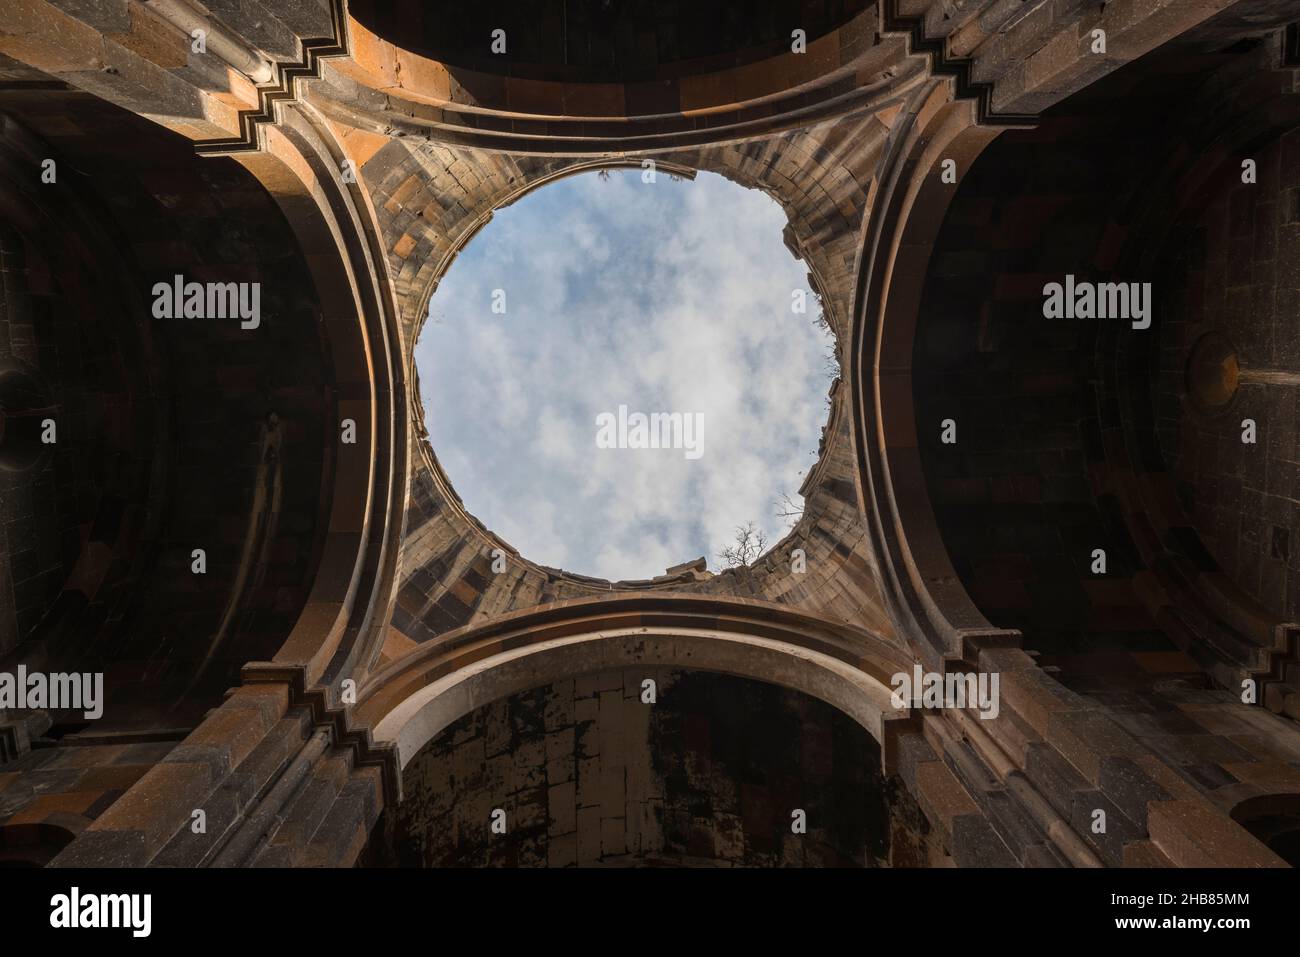 Guardando verso il cielo attraverso l'apertura della cupola mancante della Cattedrale nella città medievale armeno in rovina Ani nella provincia turca di Kars. Foto Stock